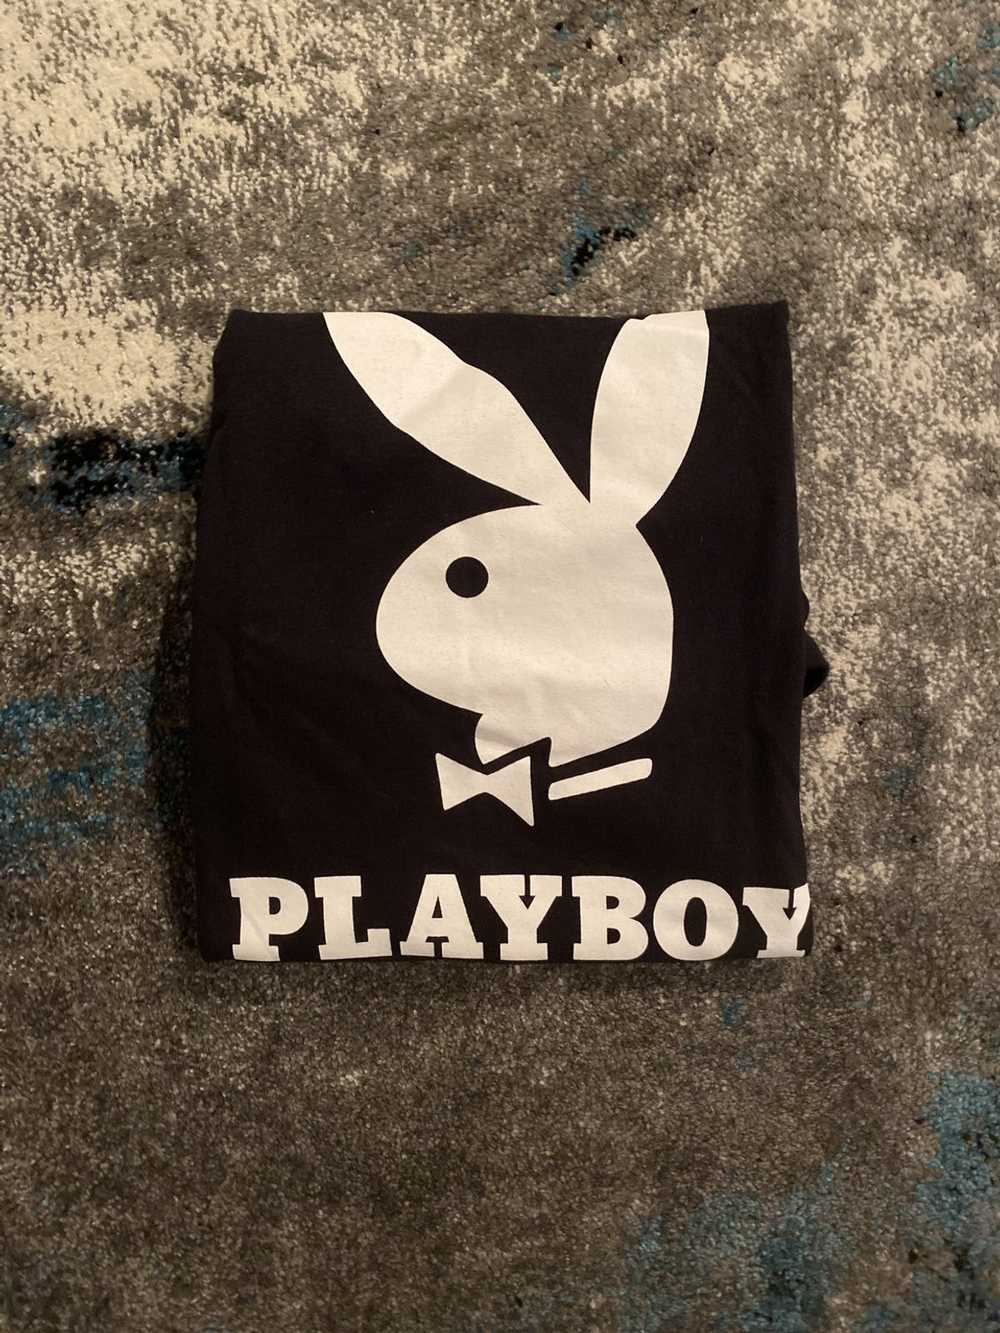 Playboy Vintage Playboy Bunny Tee - image 4